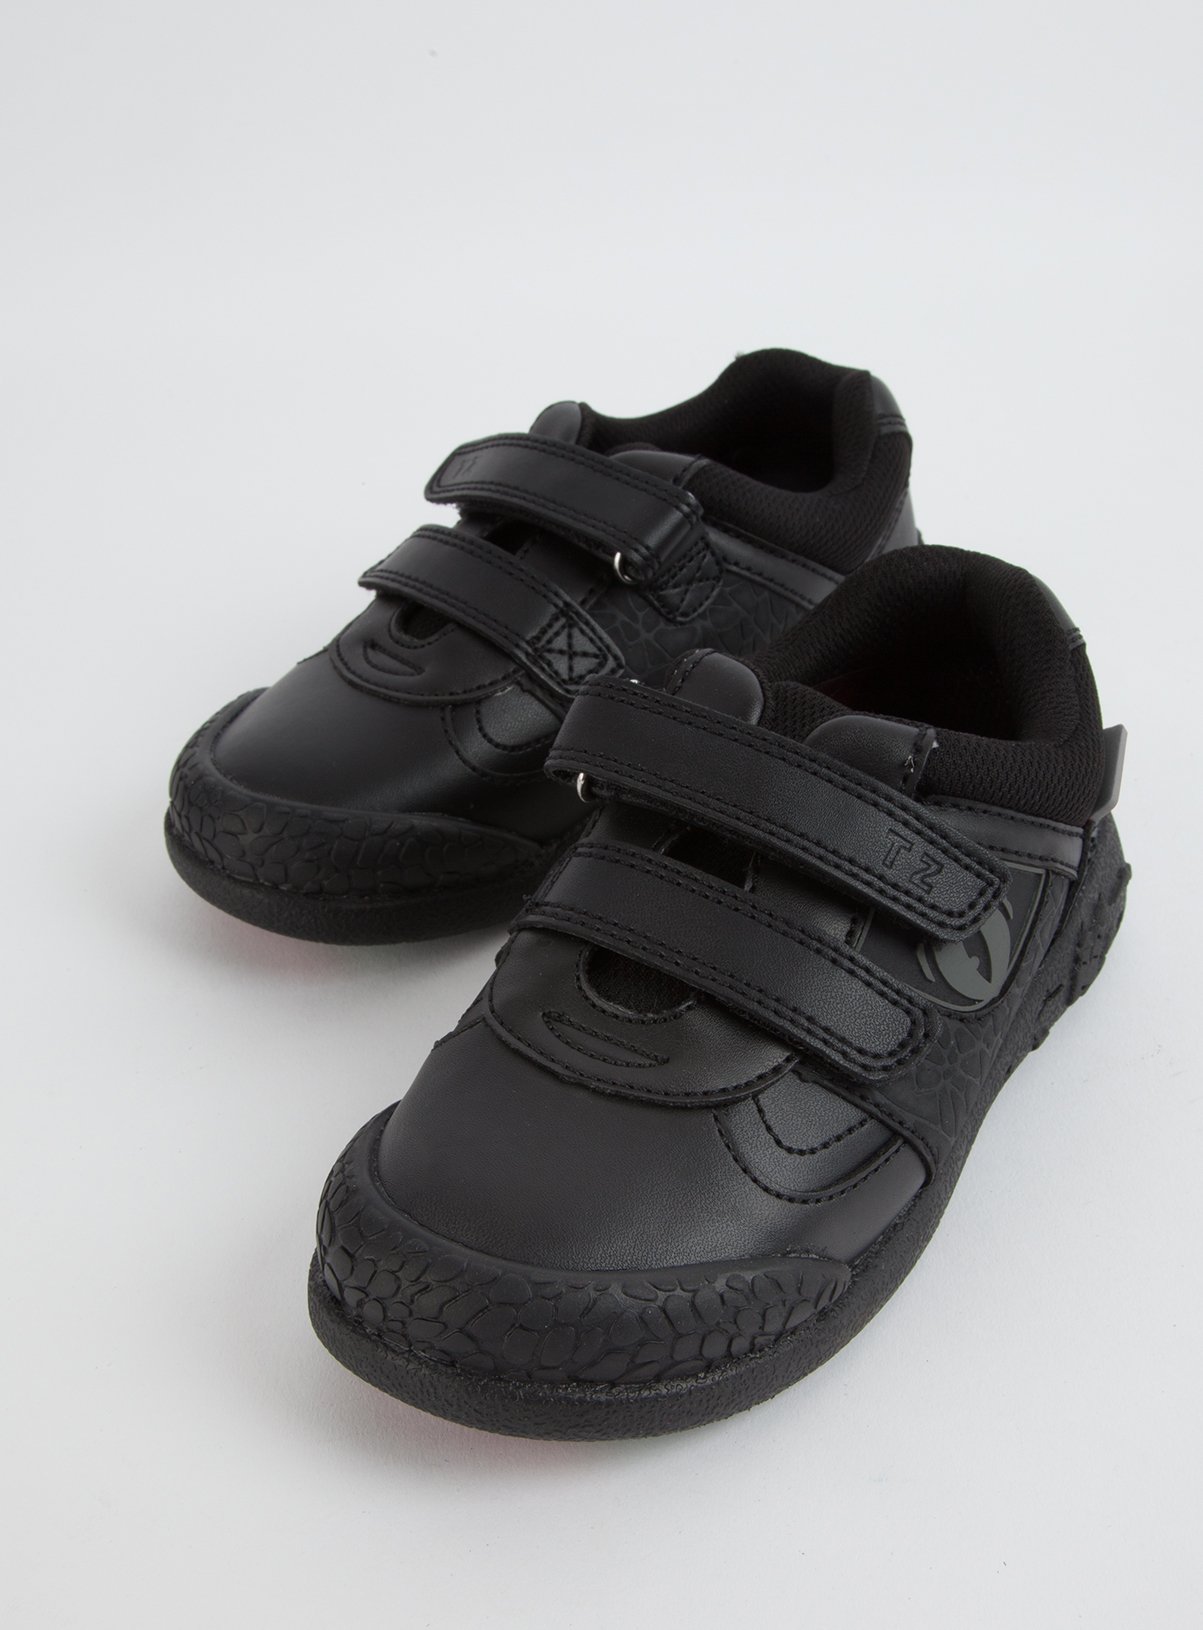 infant boys school shoes